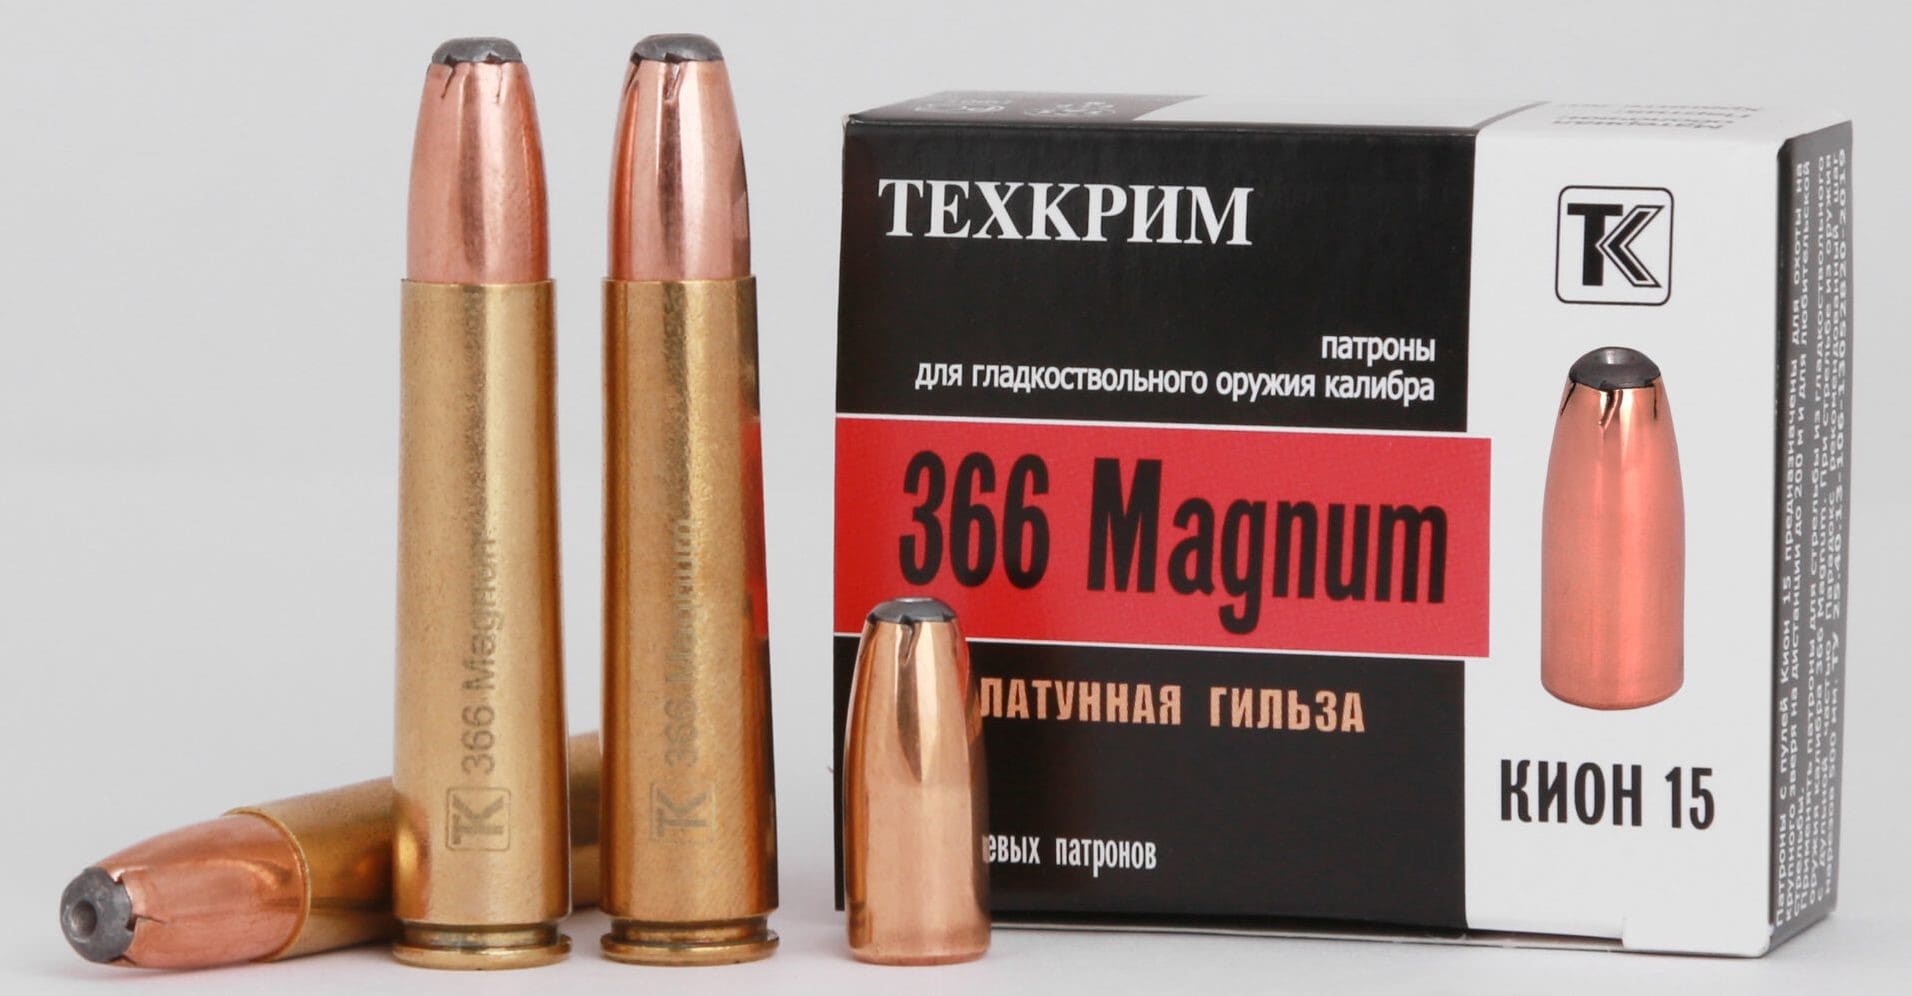 Патрон 366 Magnum Кион 15